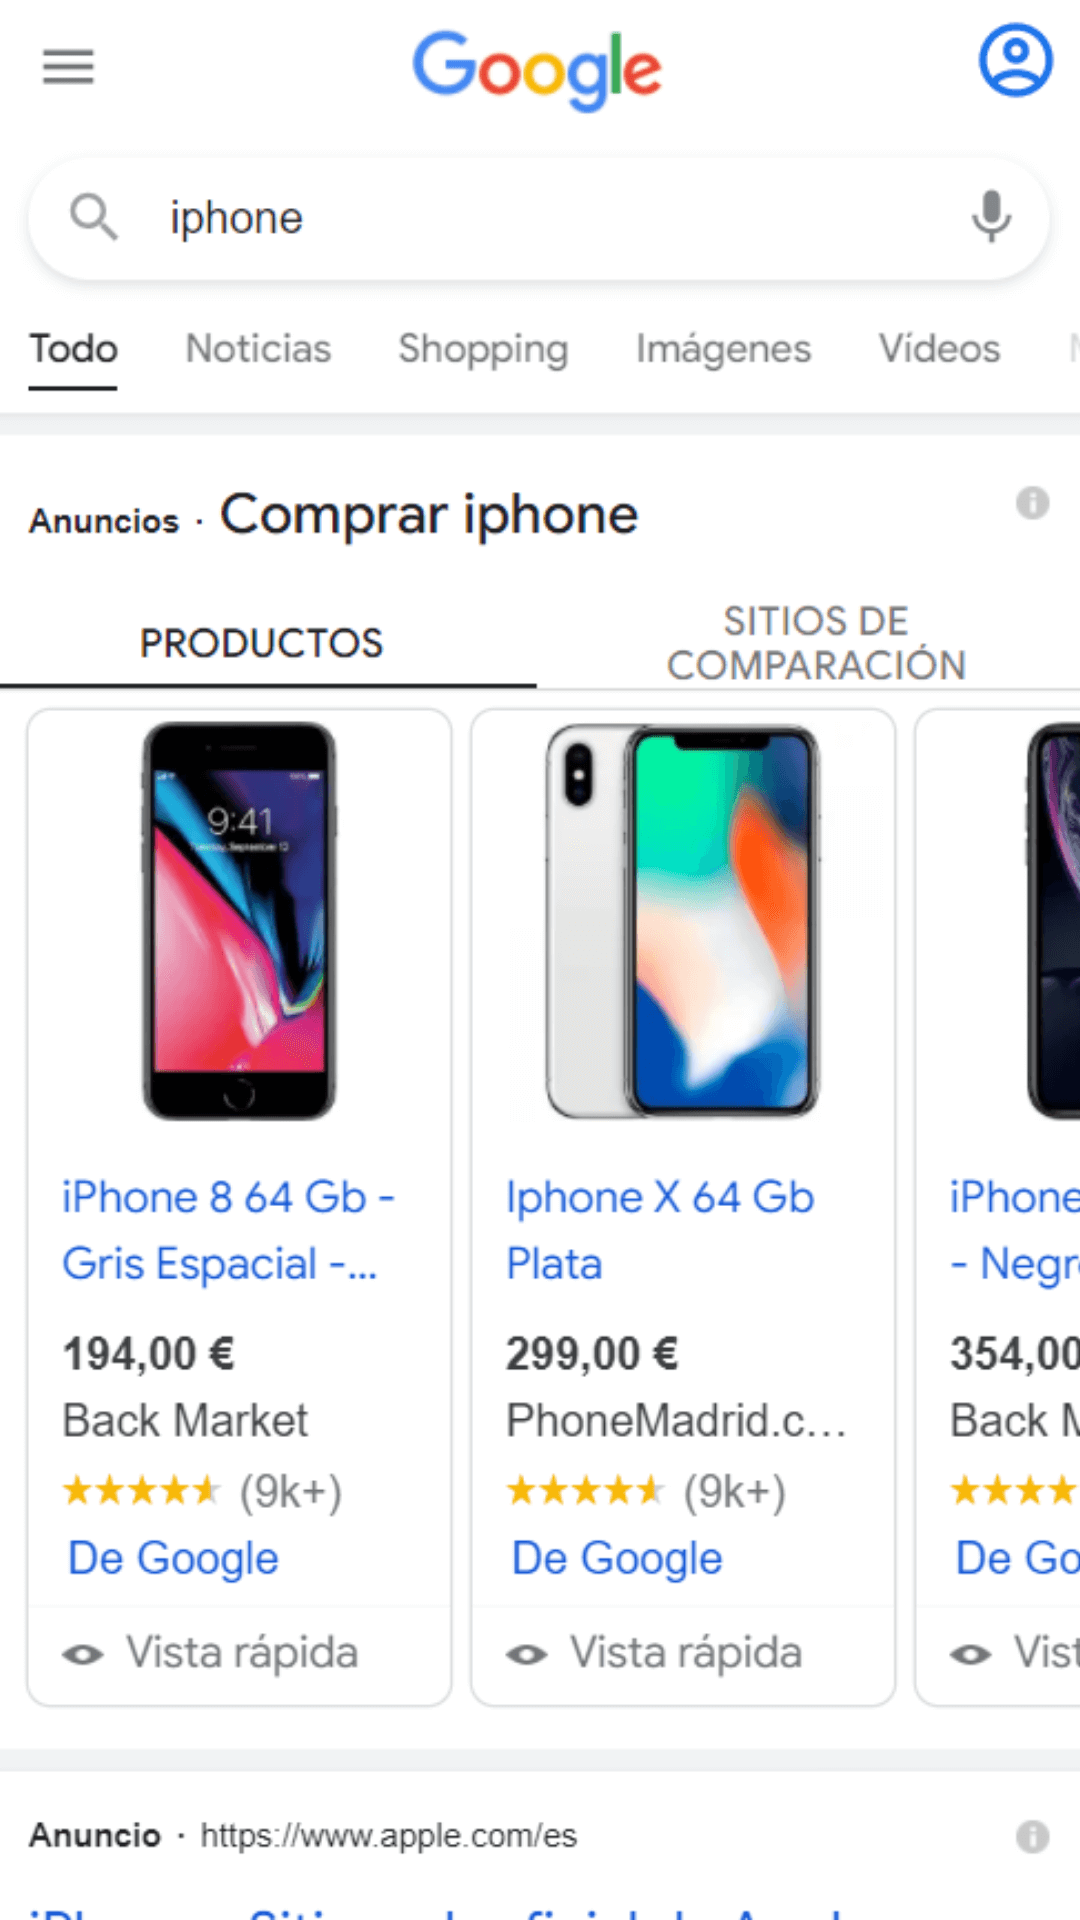 Anuncios Google Shopping iPhone